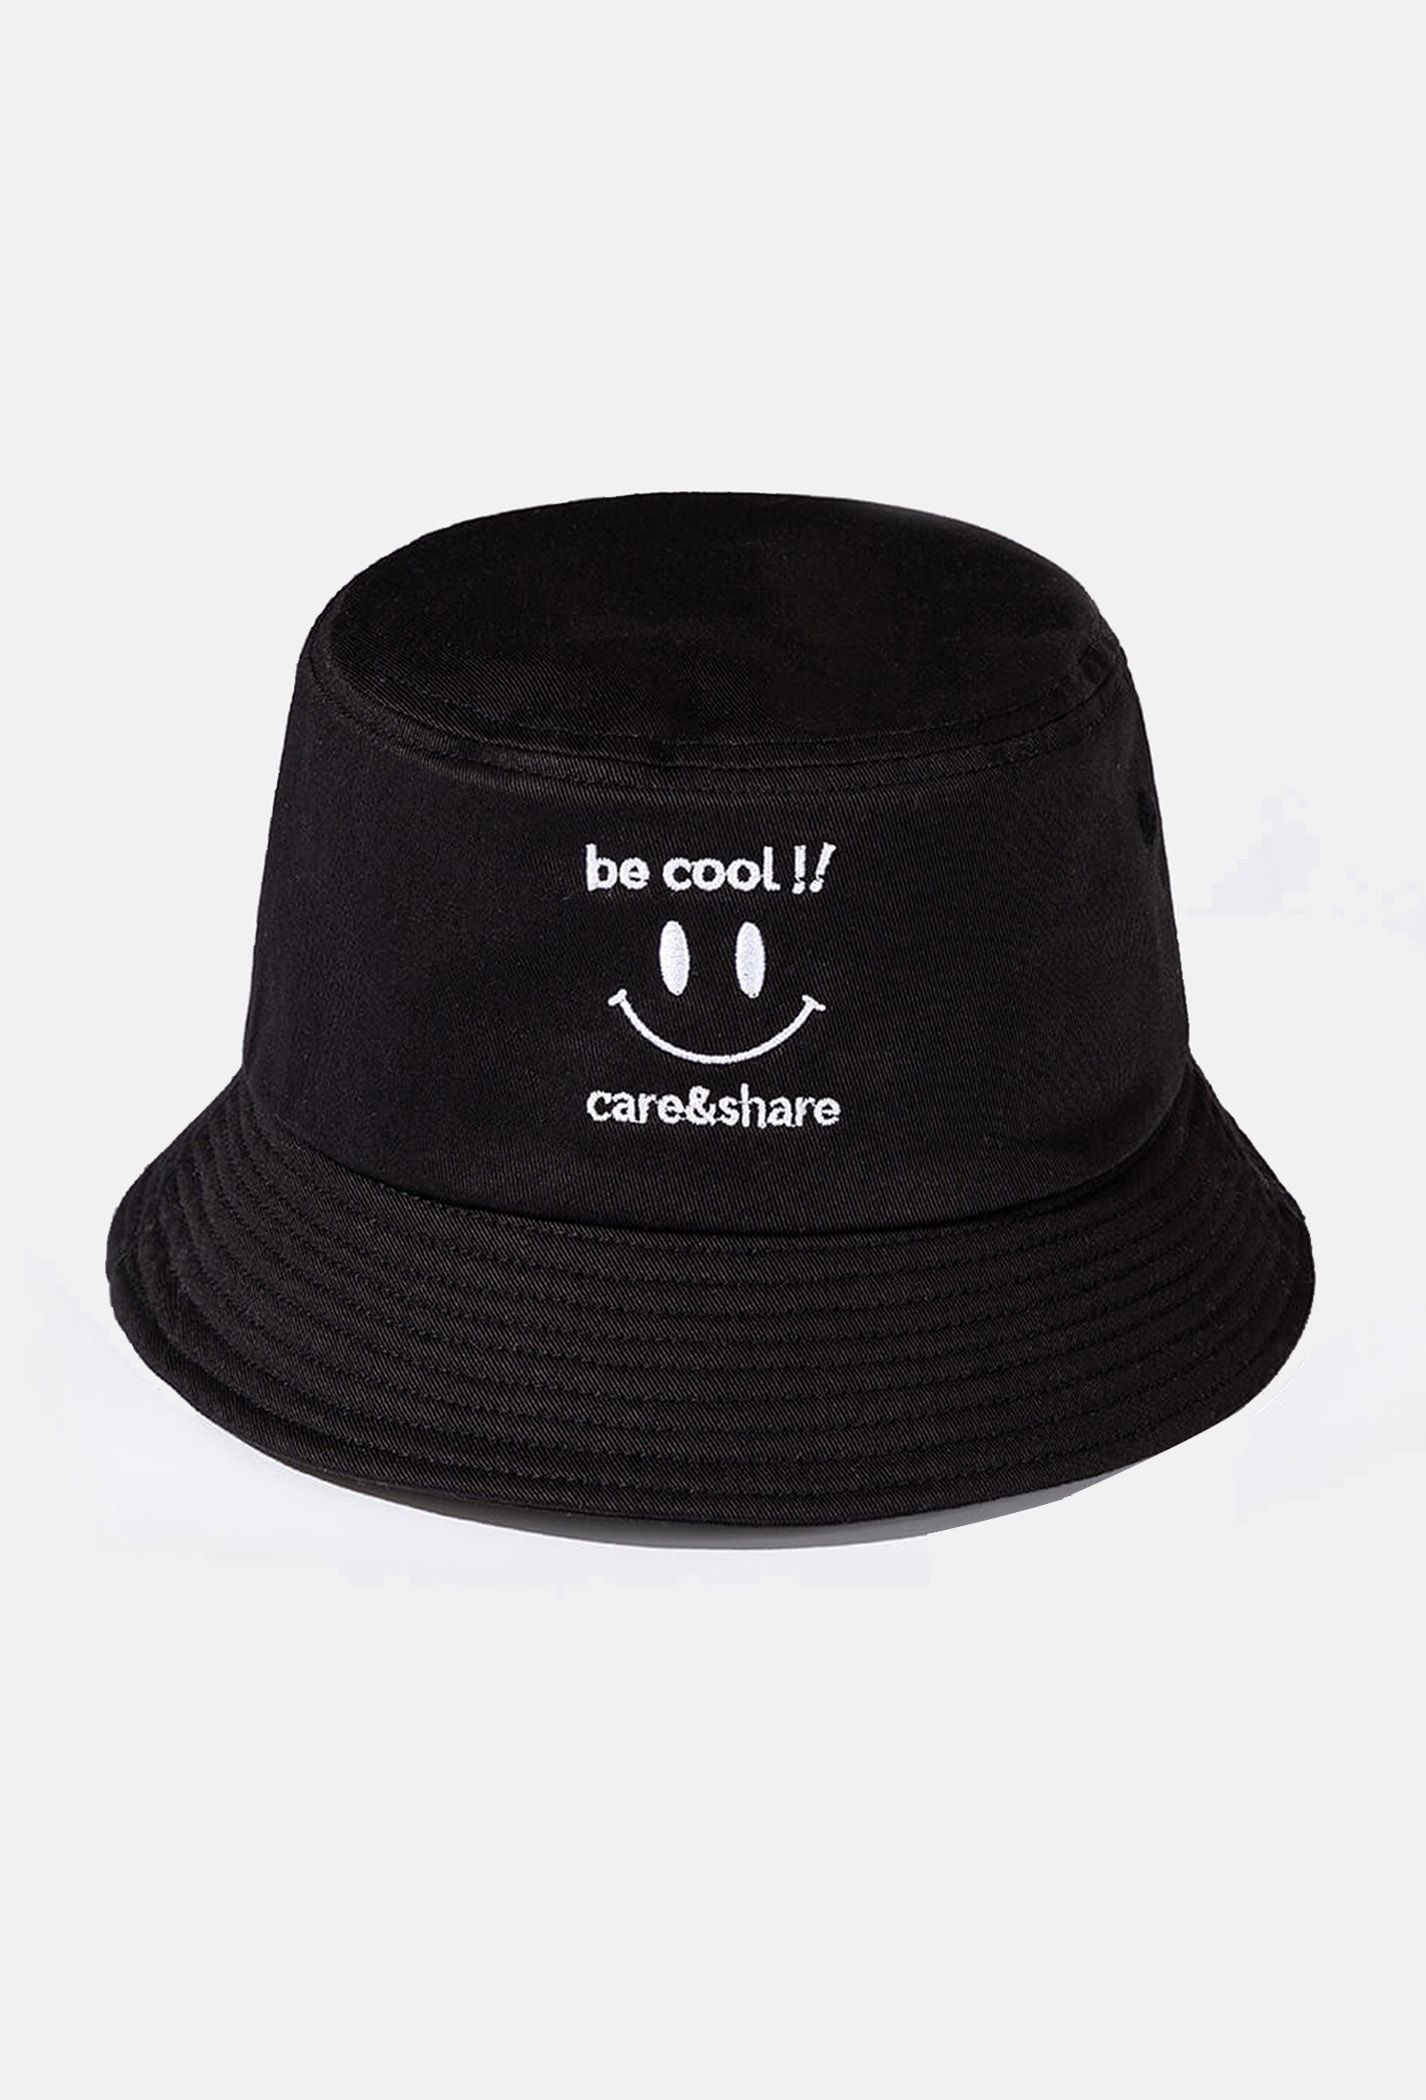 Mũ/Nón Bucket Hat thêu Be Cool!!  den